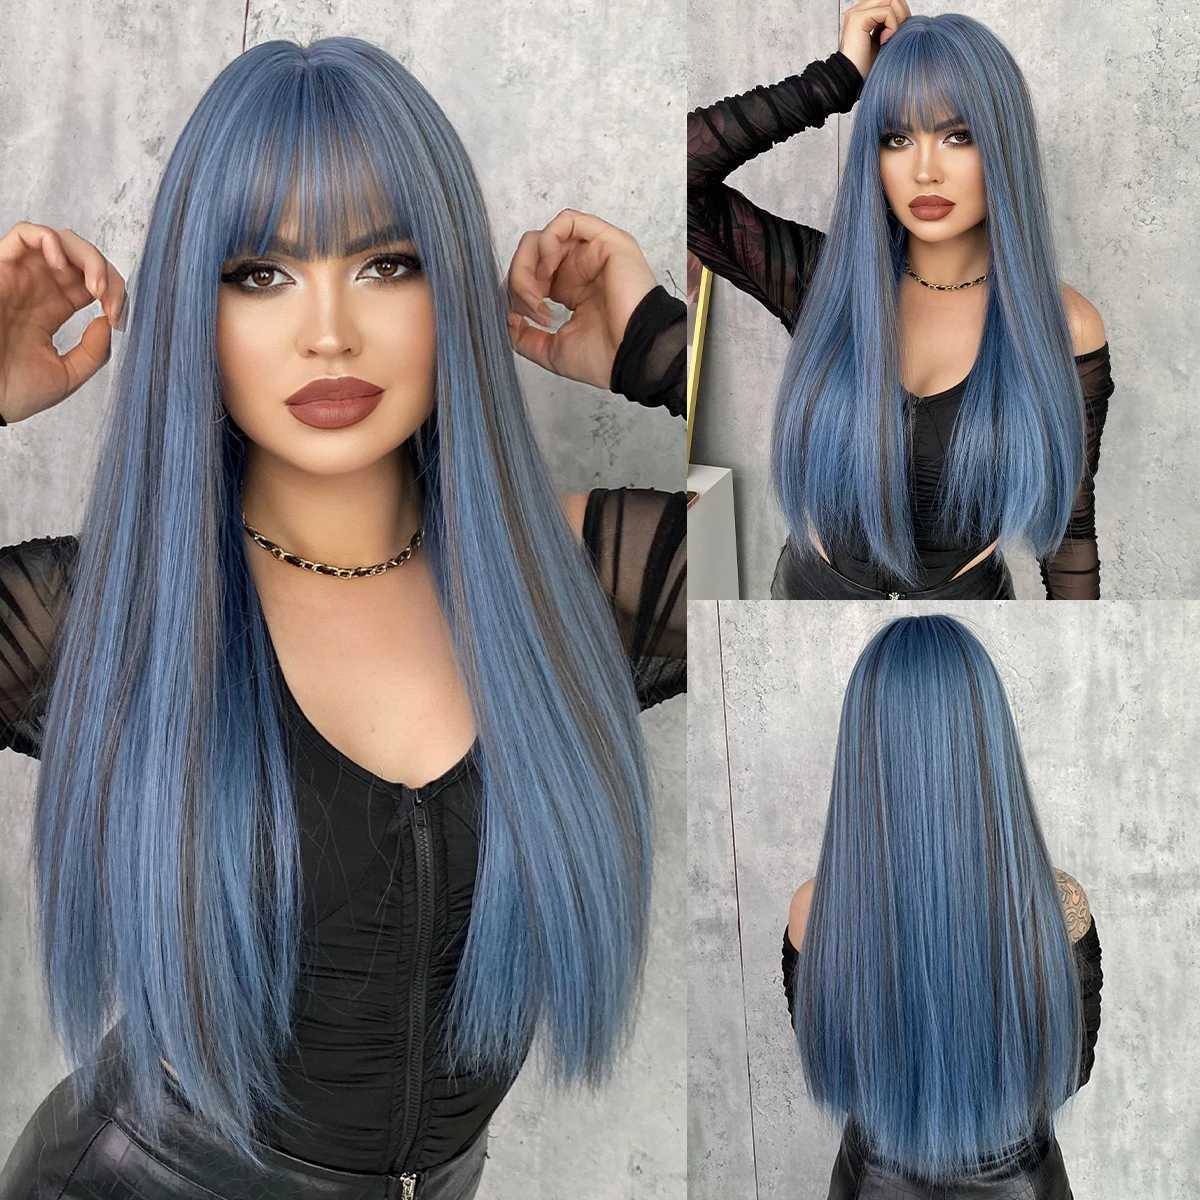 Sentetik peruklar cosplay perukları namm uzun düz mavi peruklar patlamalar ile kadınlar için doğal sentetik peruk